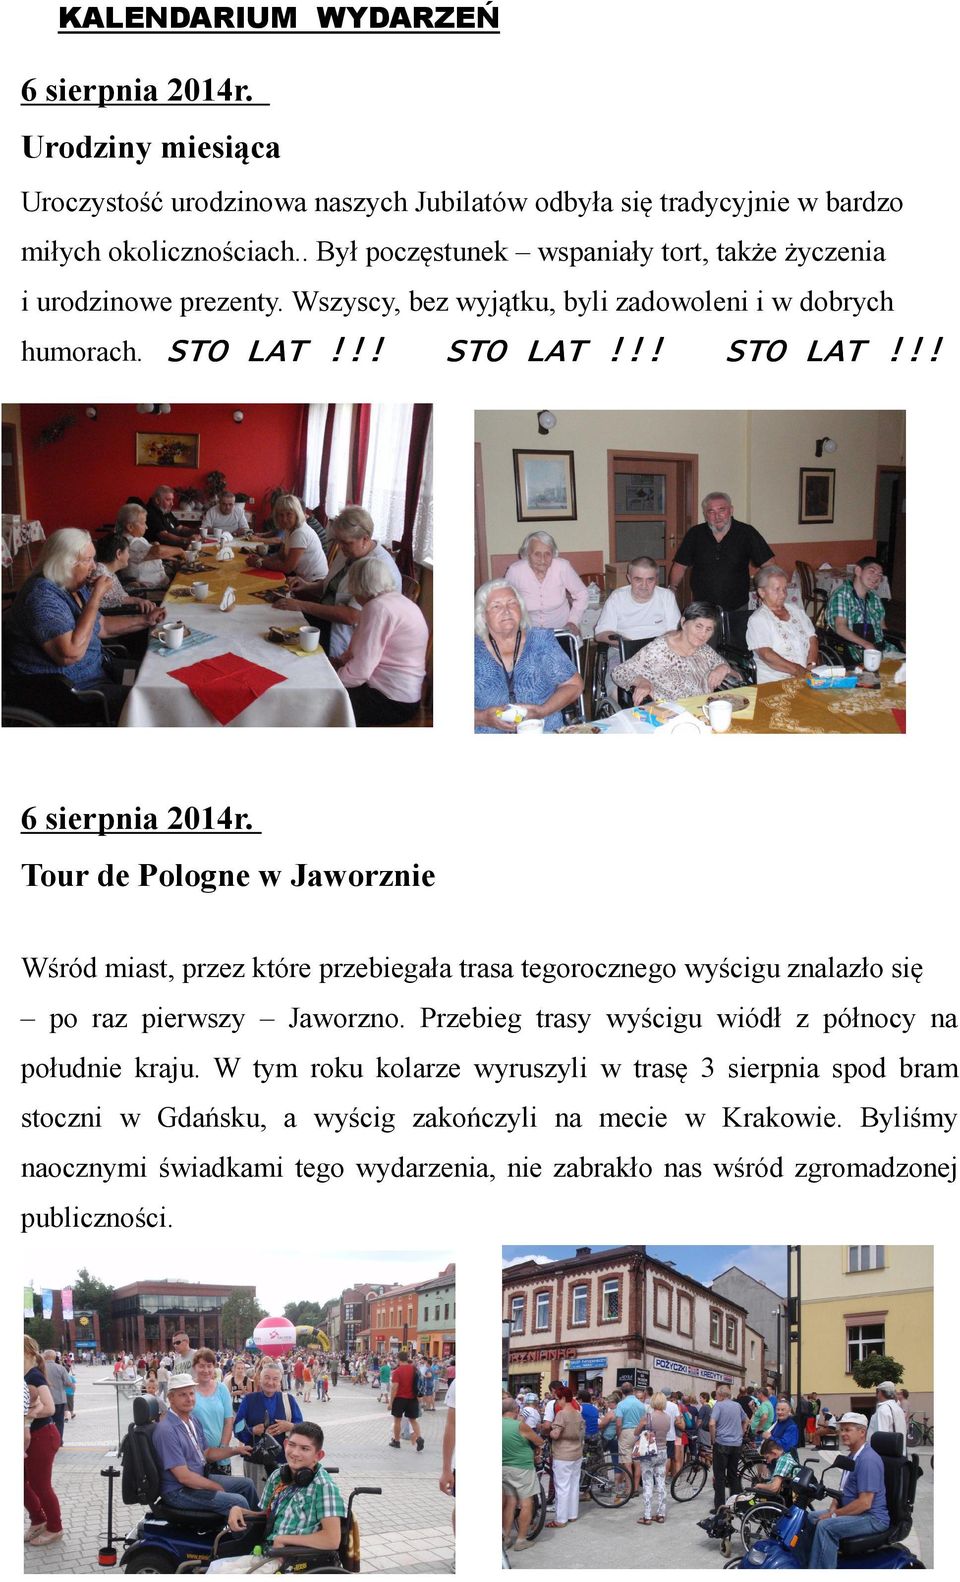 Tour de Pologne w Jaworznie Wśród miast, przez które przebiegała trasa tegorocznego wyścigu znalazło się po raz pierwszy Jaworzno.